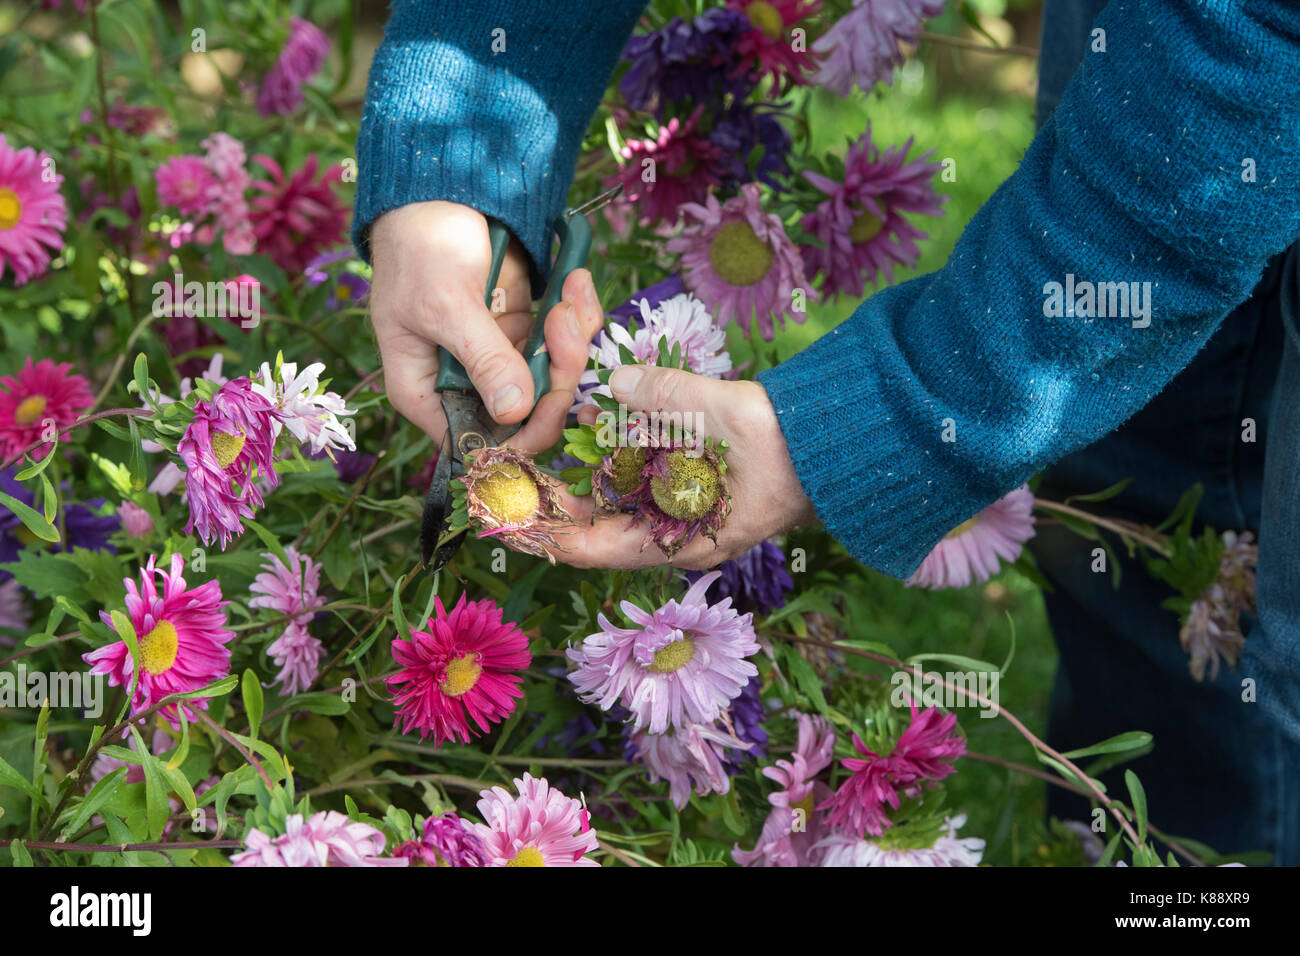 Callistephus chinensis. Extracción del jardinero muertos jefes de Aster solo andrella gigante de flores variadas para recolectar semillas para el próximo año. UK Foto de stock